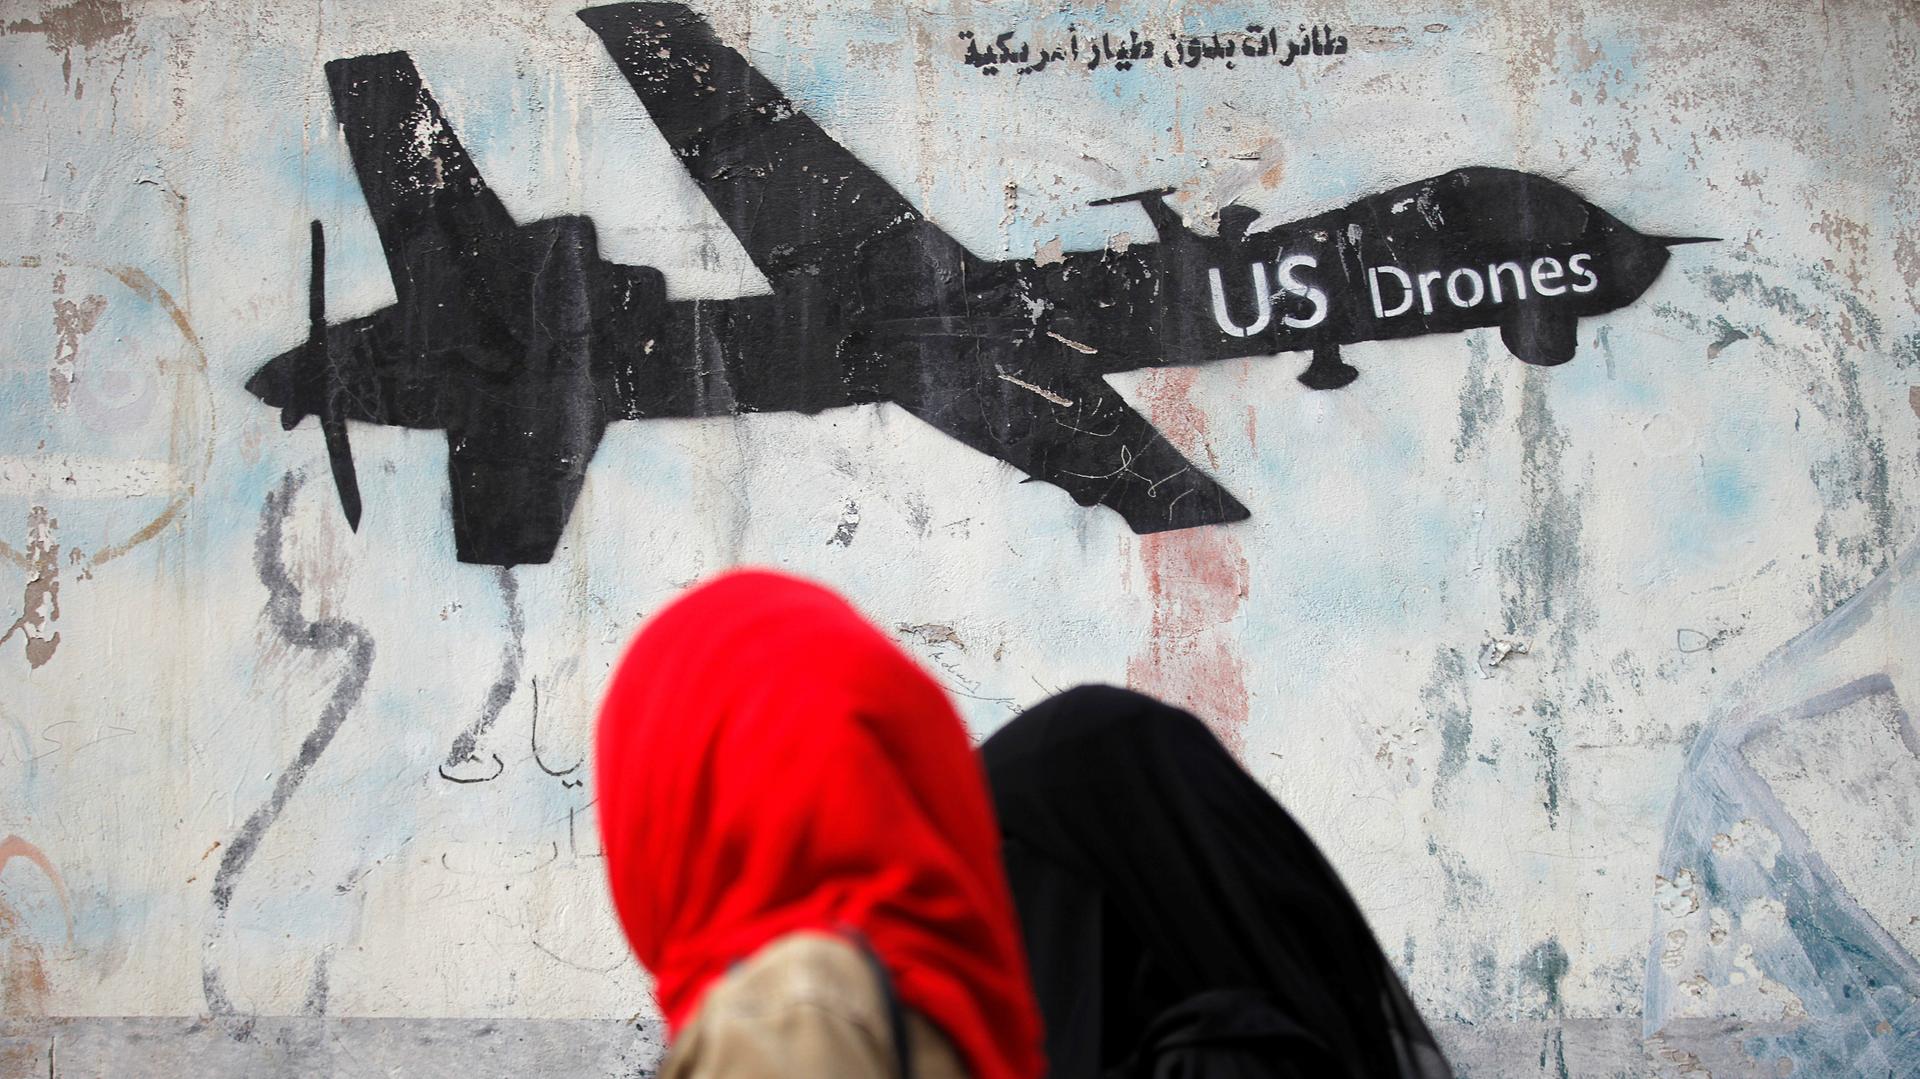 Women walk past graffiti denouncing strikes by US drones in Yemen, painted on a wall in Sanaa, Yemen, Feb. 6, 2017.